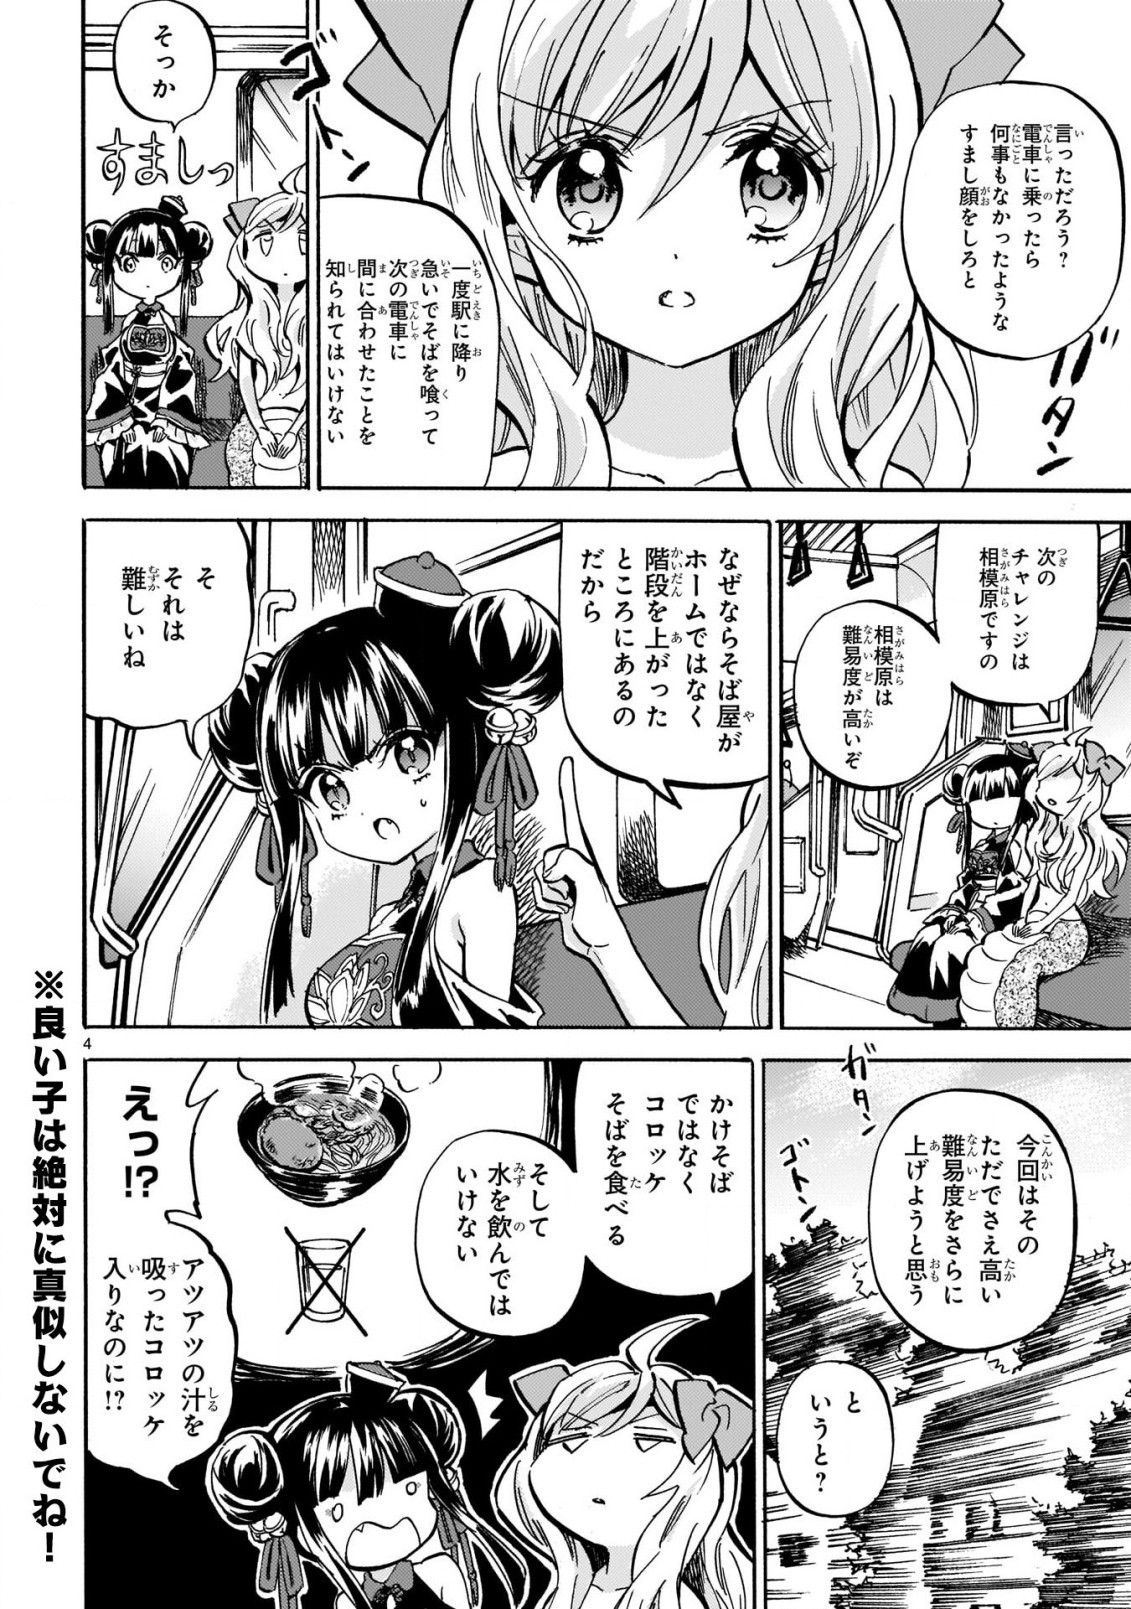 Jashin-chan Dropkick - Chapter 211 - Page 4